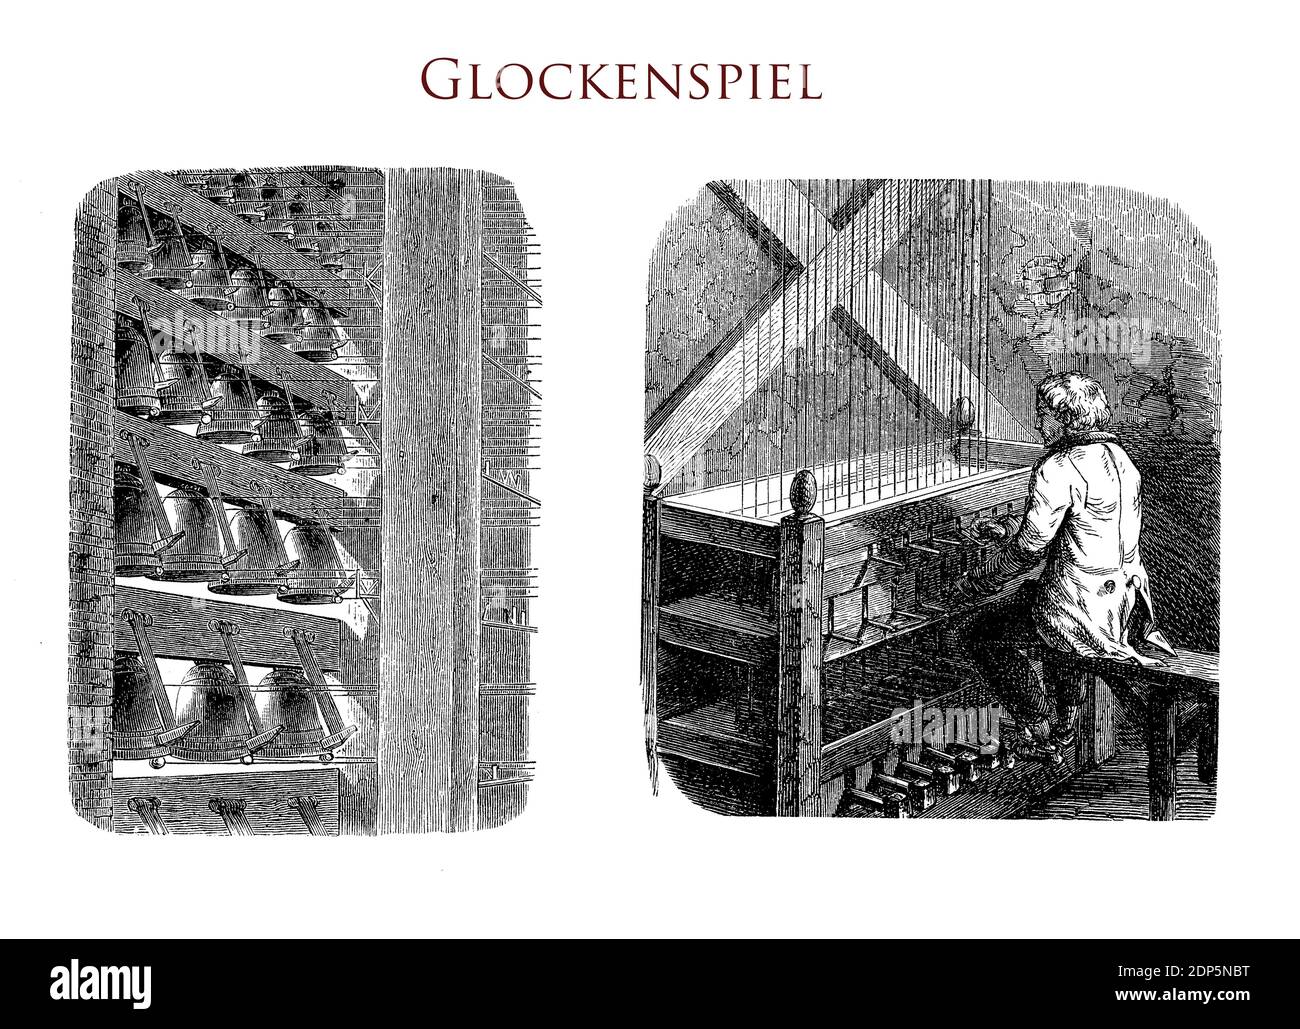 Glockenspiel ou carillon, instrument de musique typique logé habituellement dans une tour d'église composée de plusieurs cloches de bronze jouées par un clavier et des pédales reliées à des fils pour frapper les cloches produisant une mélodie Banque D'Images